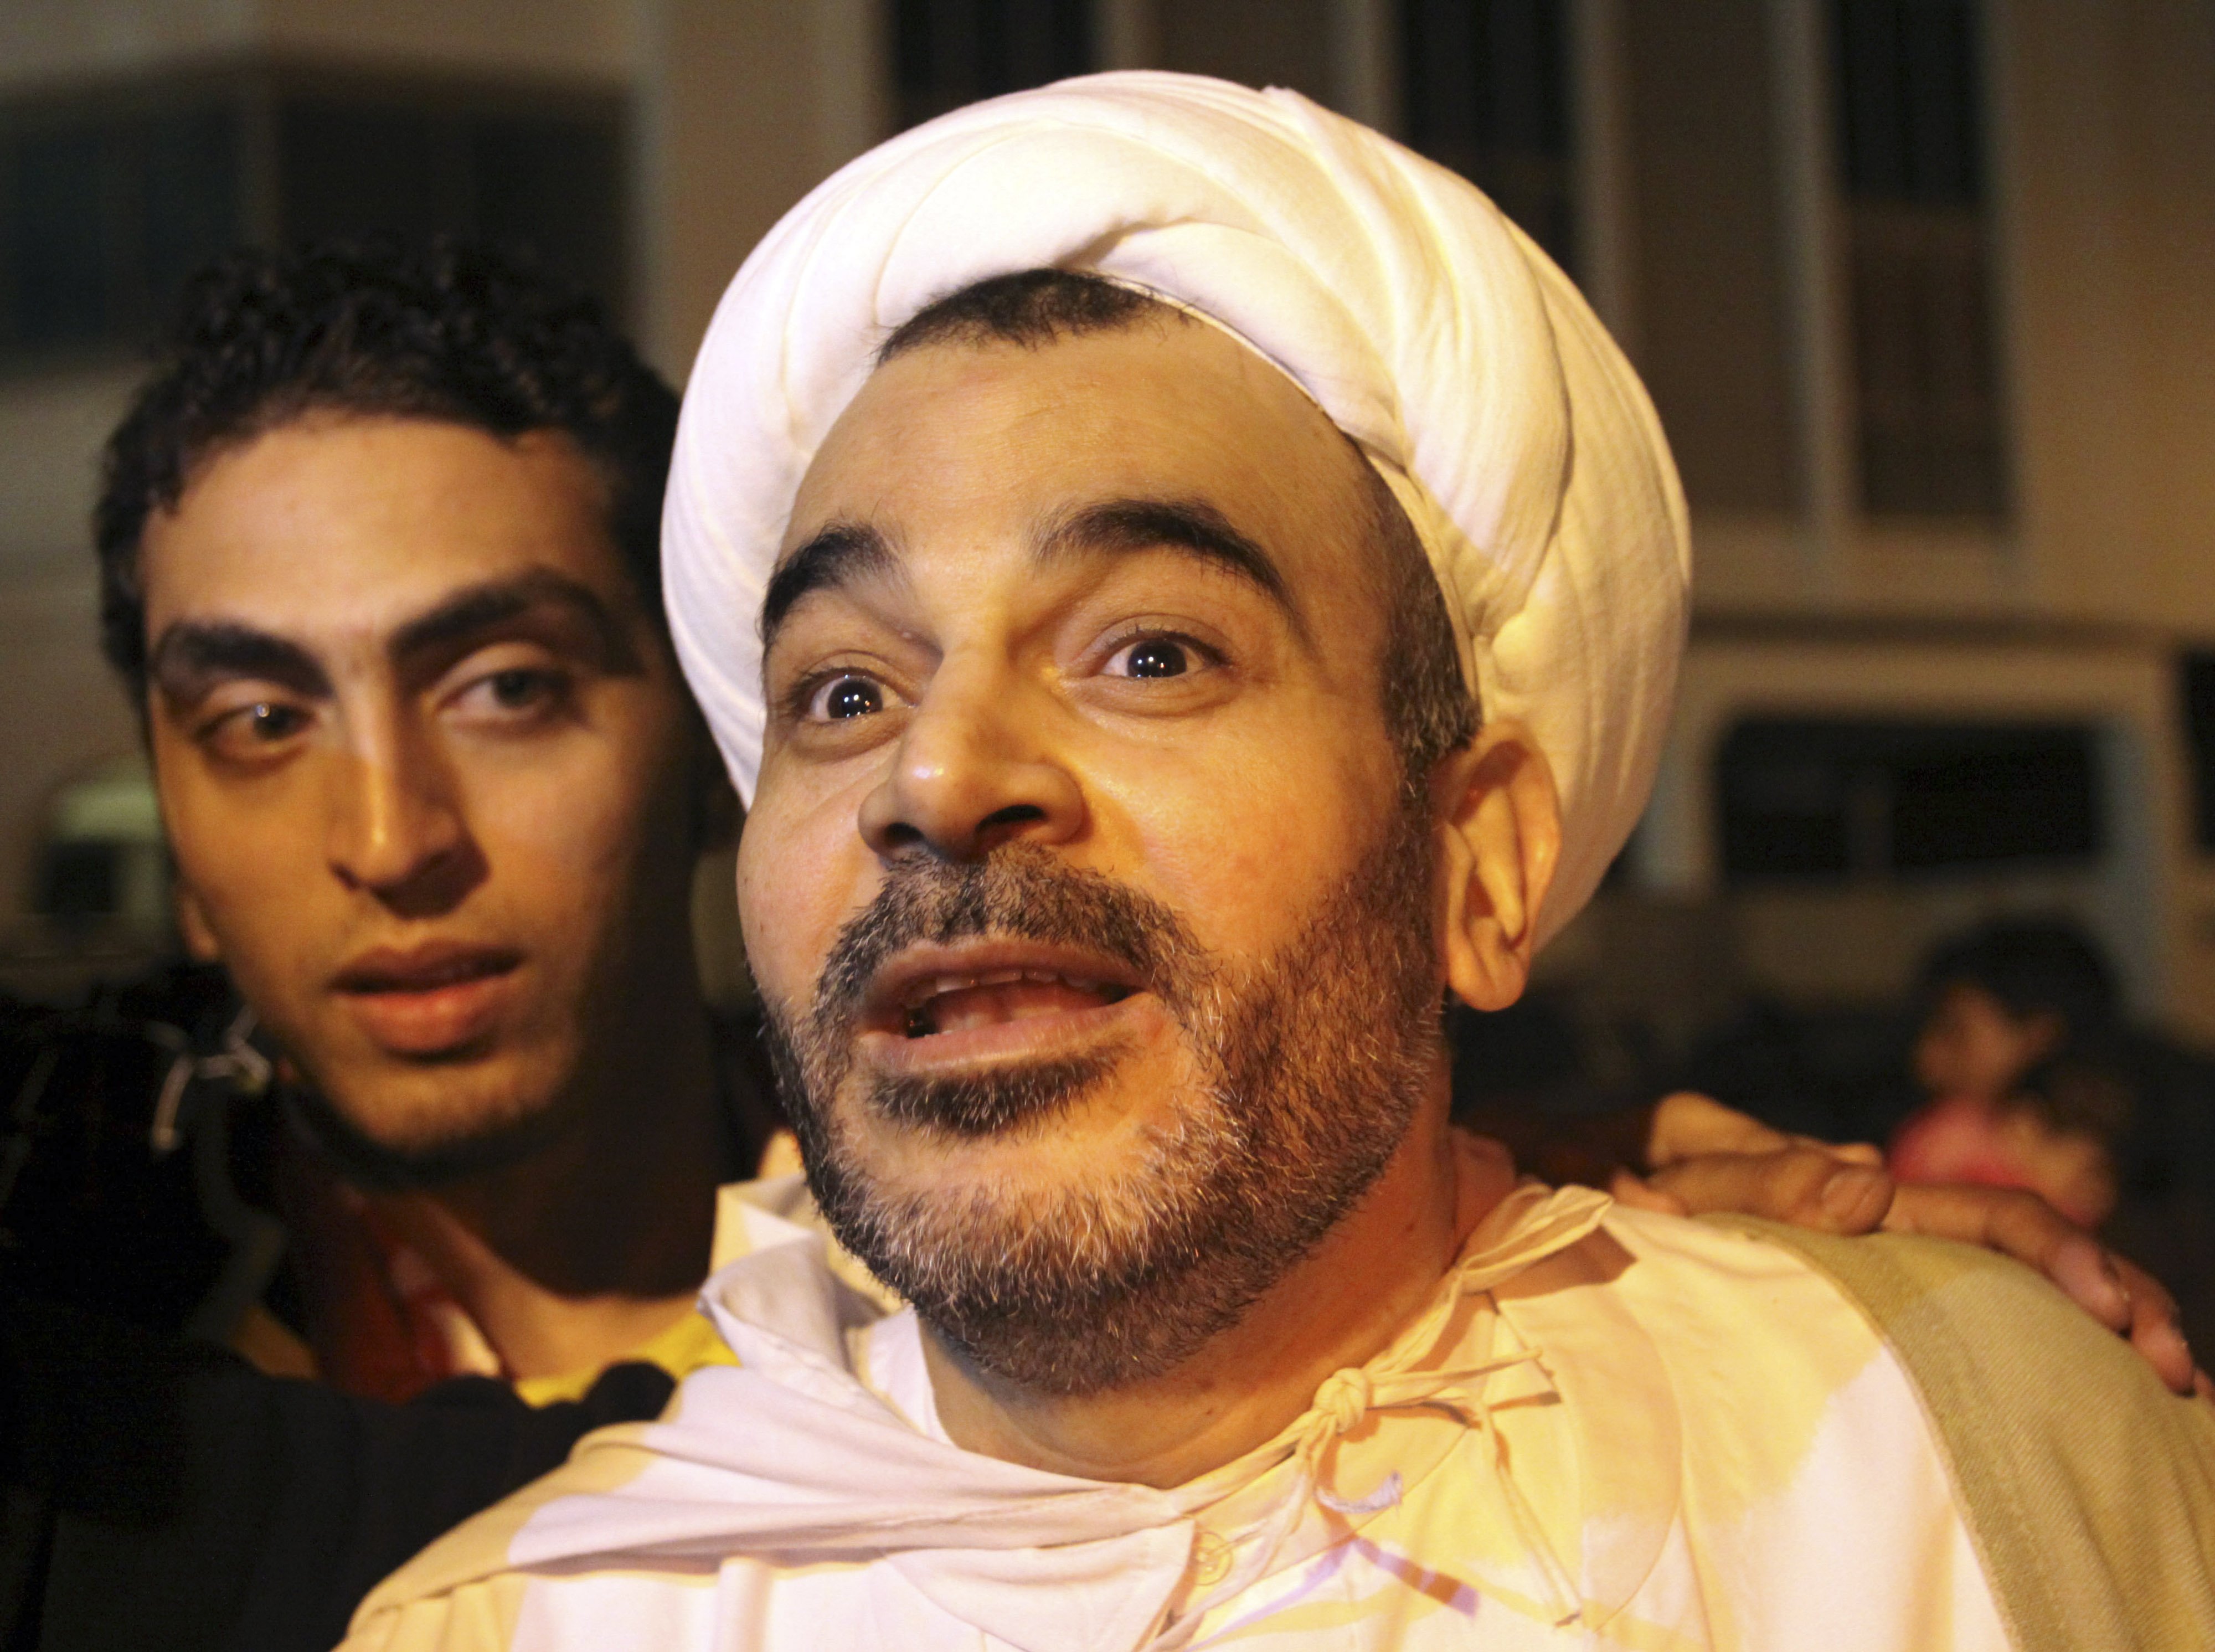 Svenske medborgaren Mohammed Habib Al-Muqdad, när han i februari en kort tid var frisläppt.